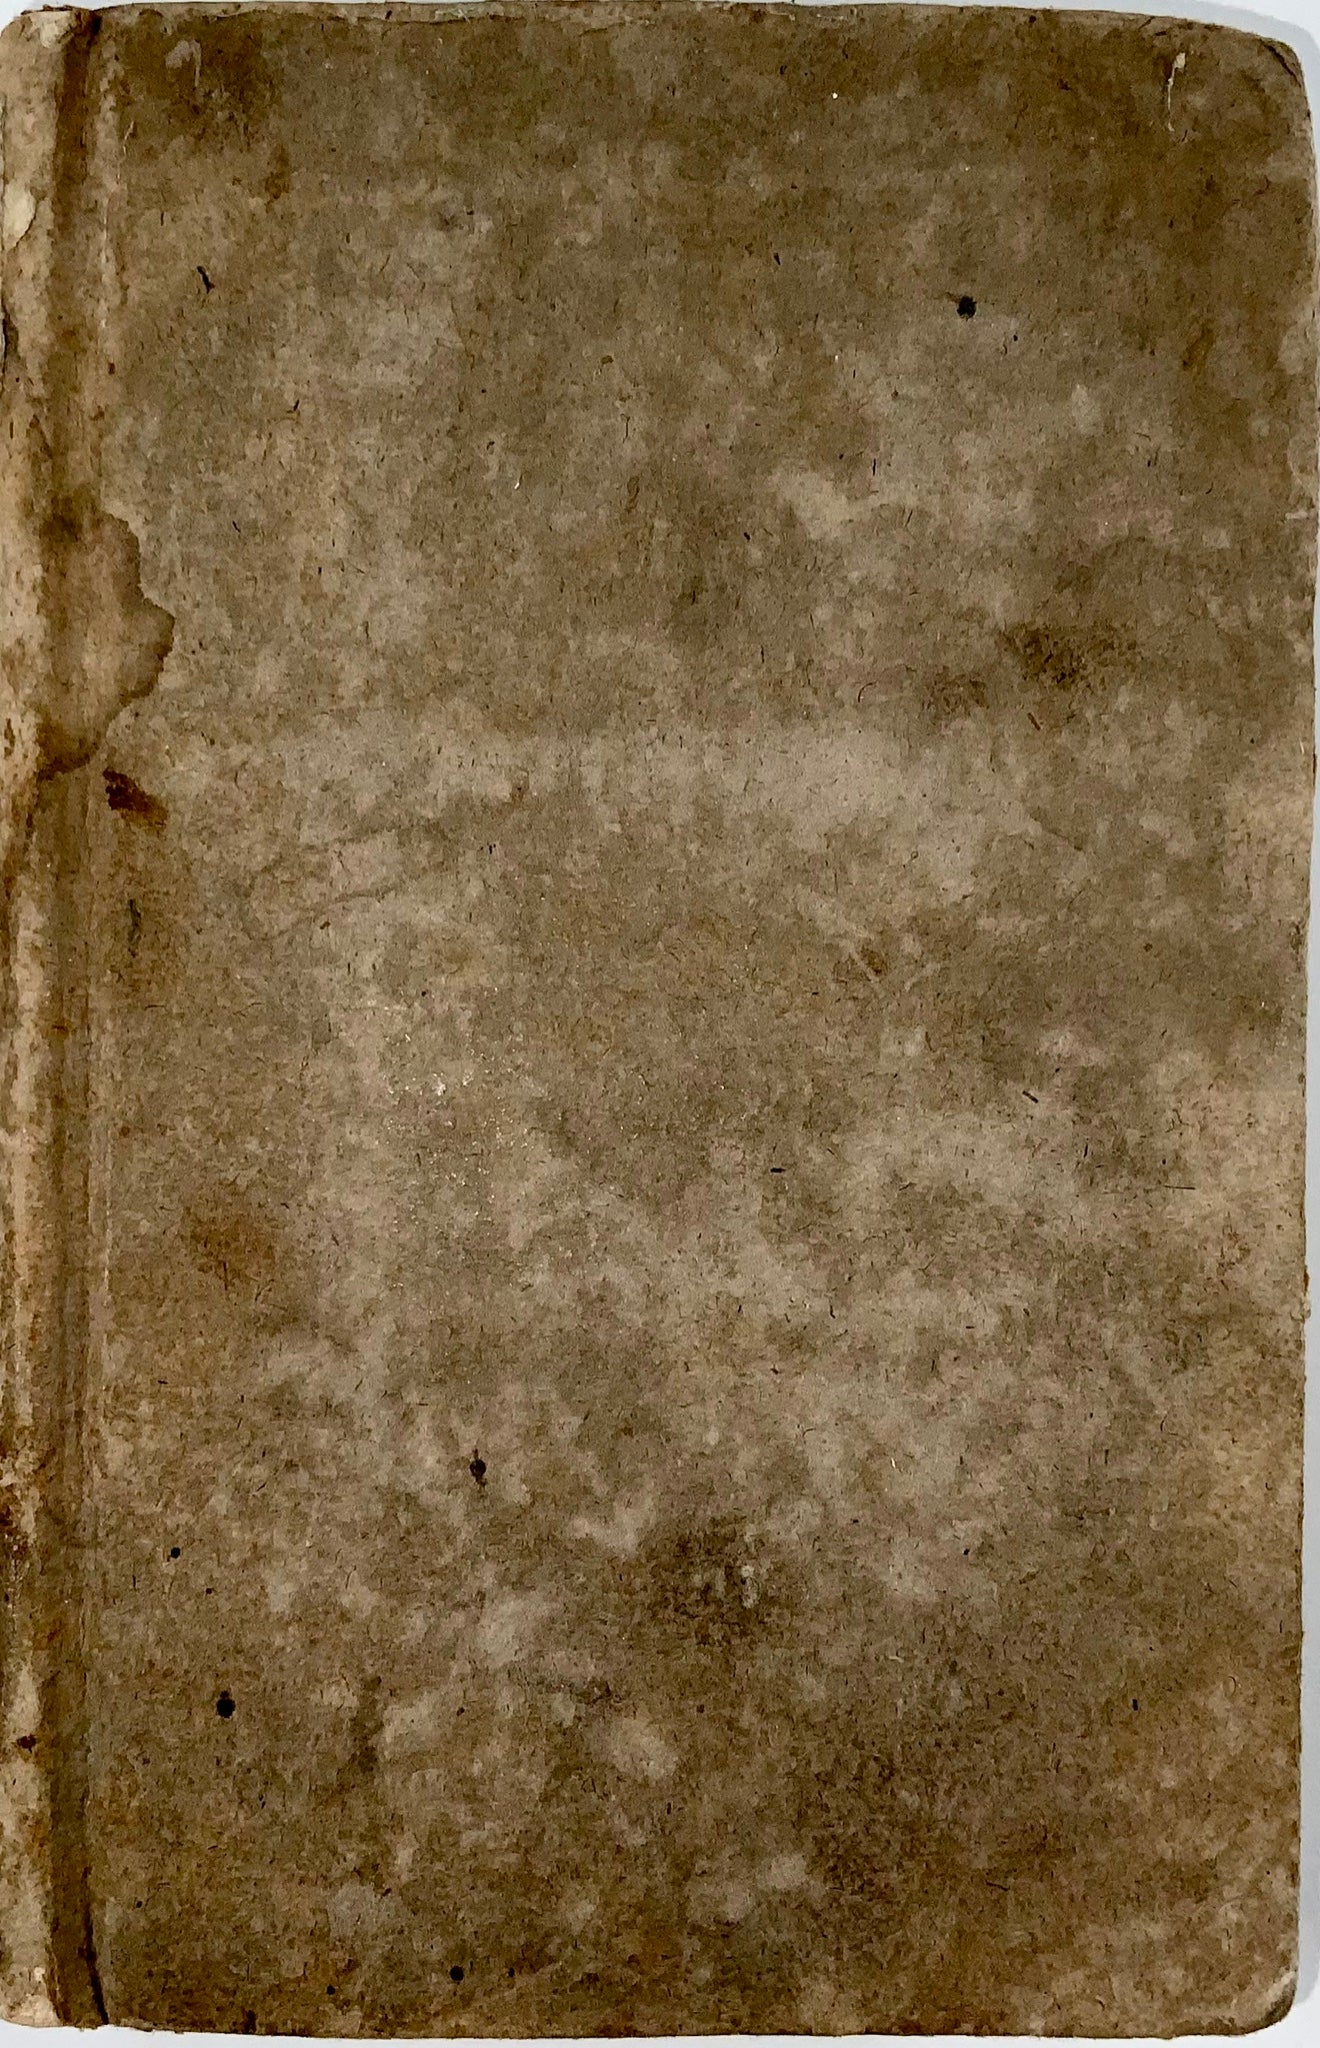 1778 Biographies of famed citizens of Lucerne, Switzerland, J. Von Bathasar